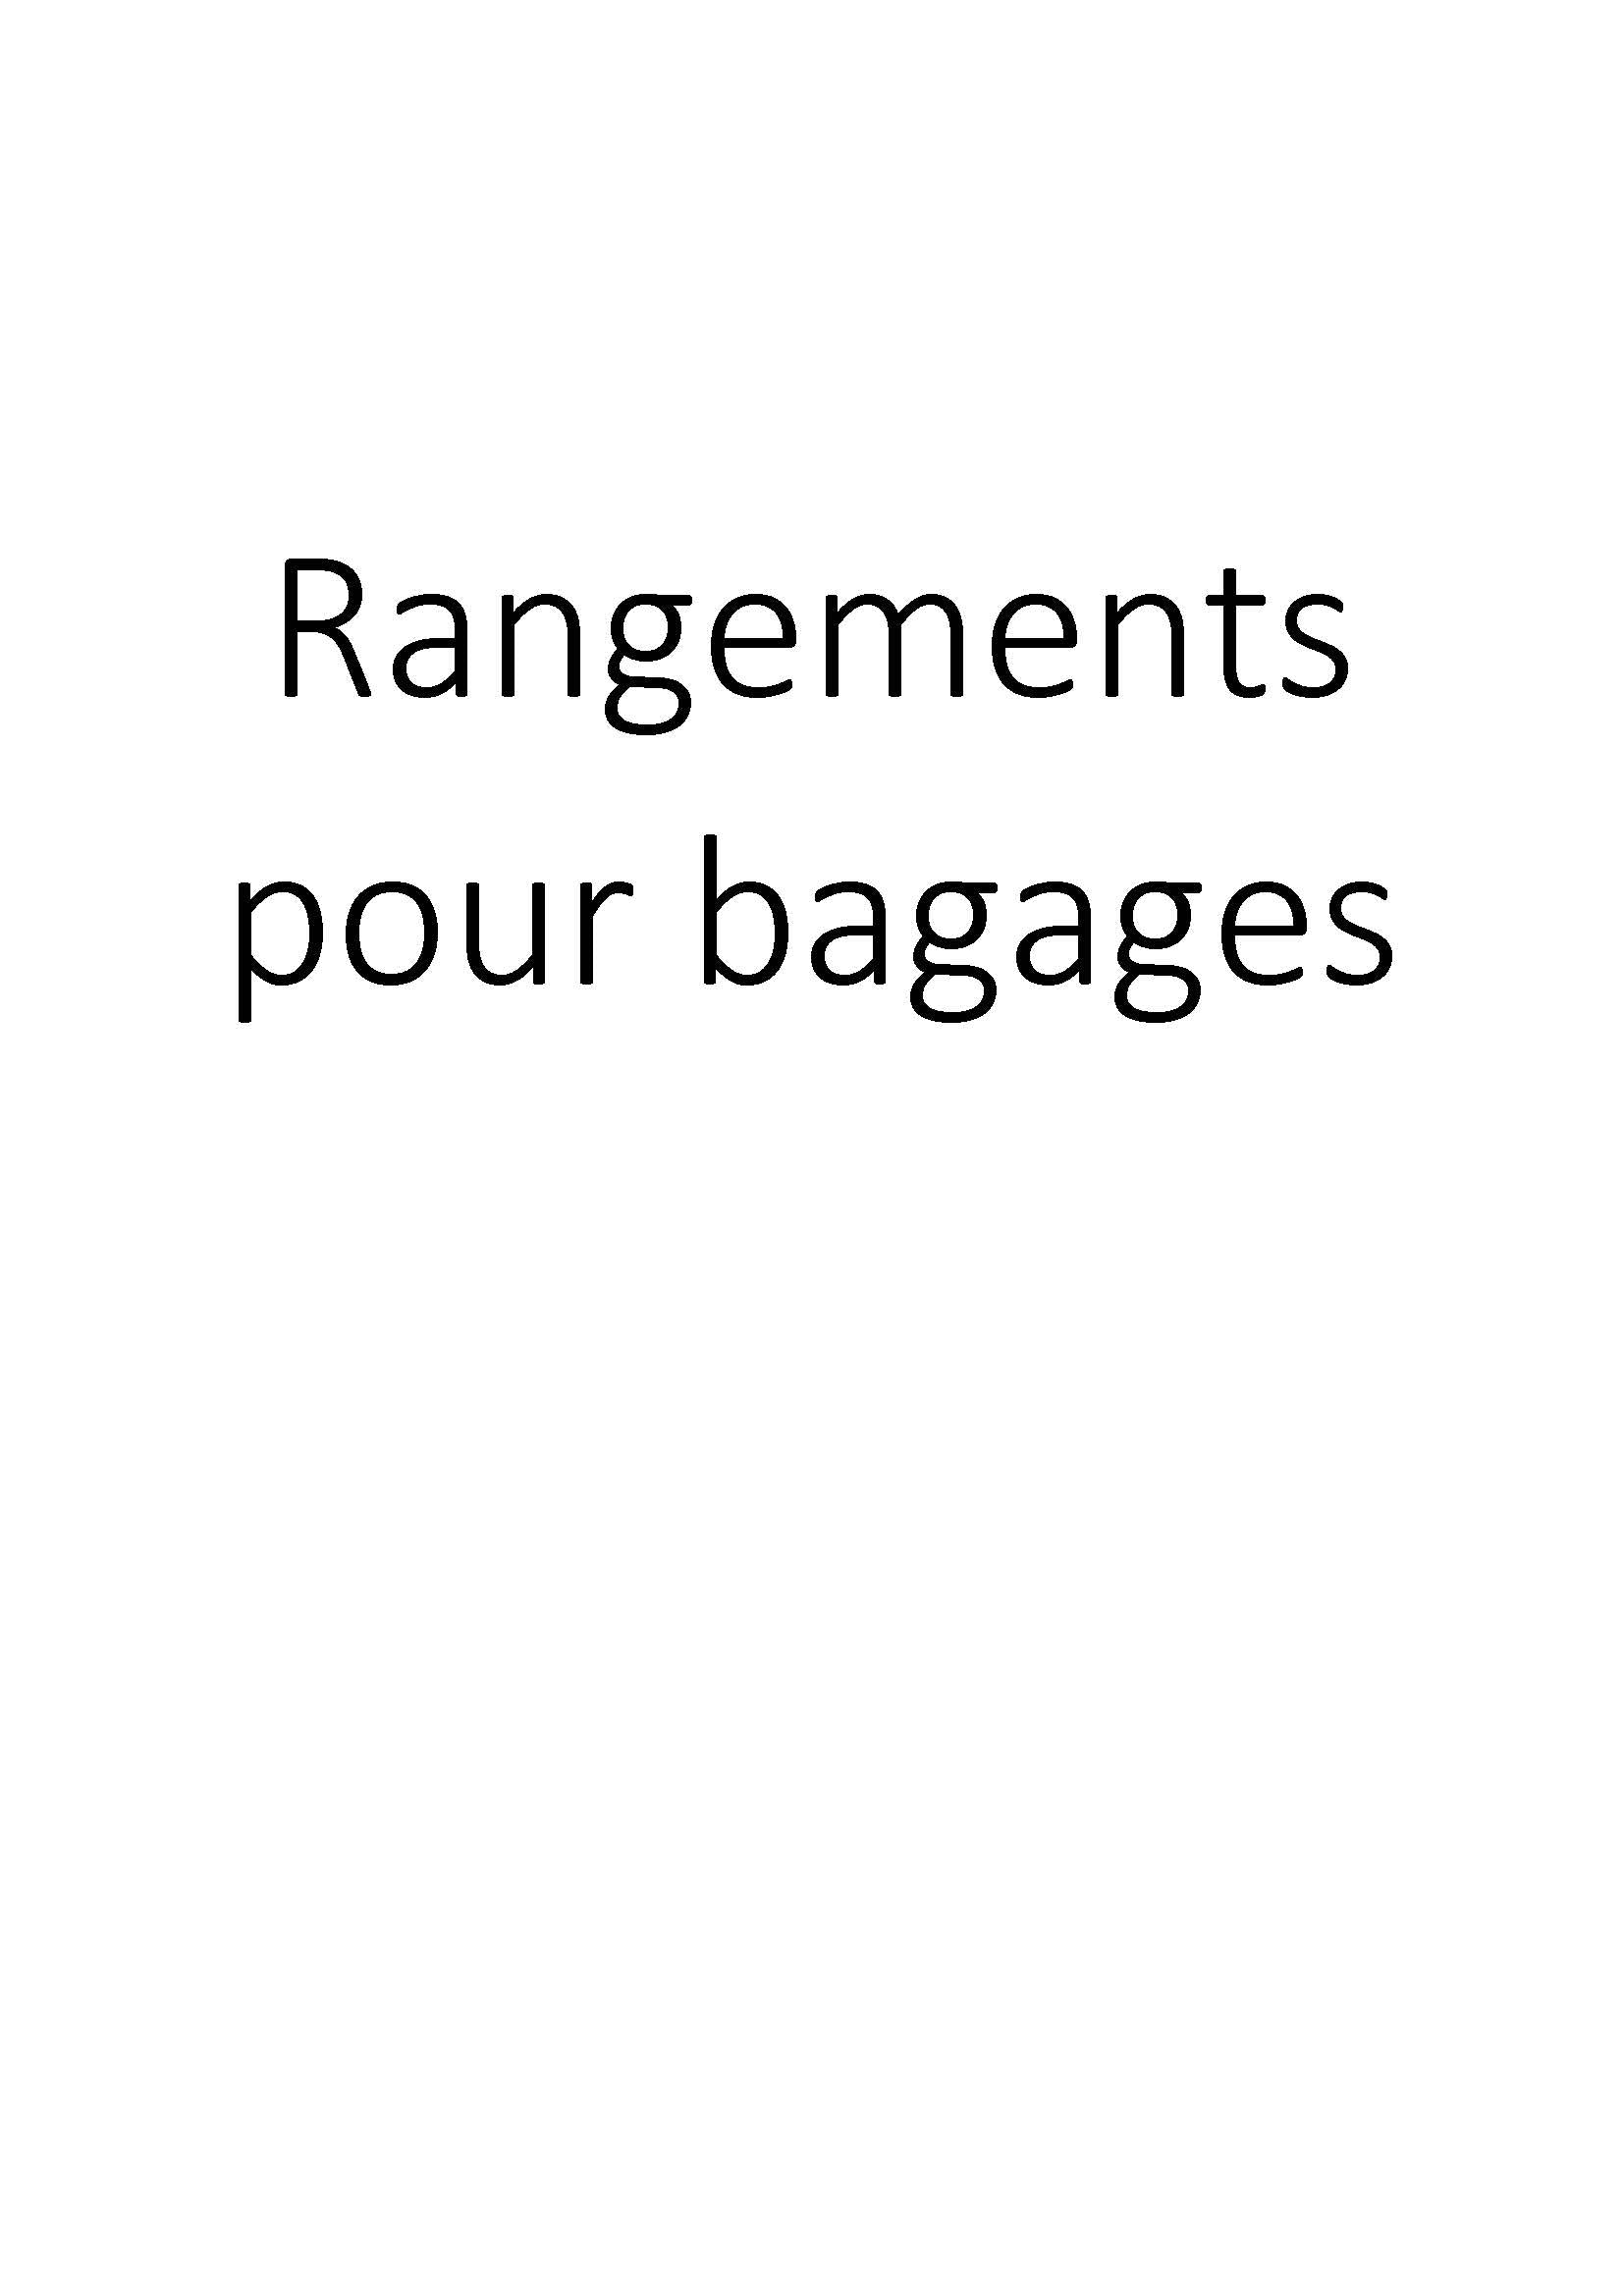 Rangements pour bagages clicktofournisseur.com